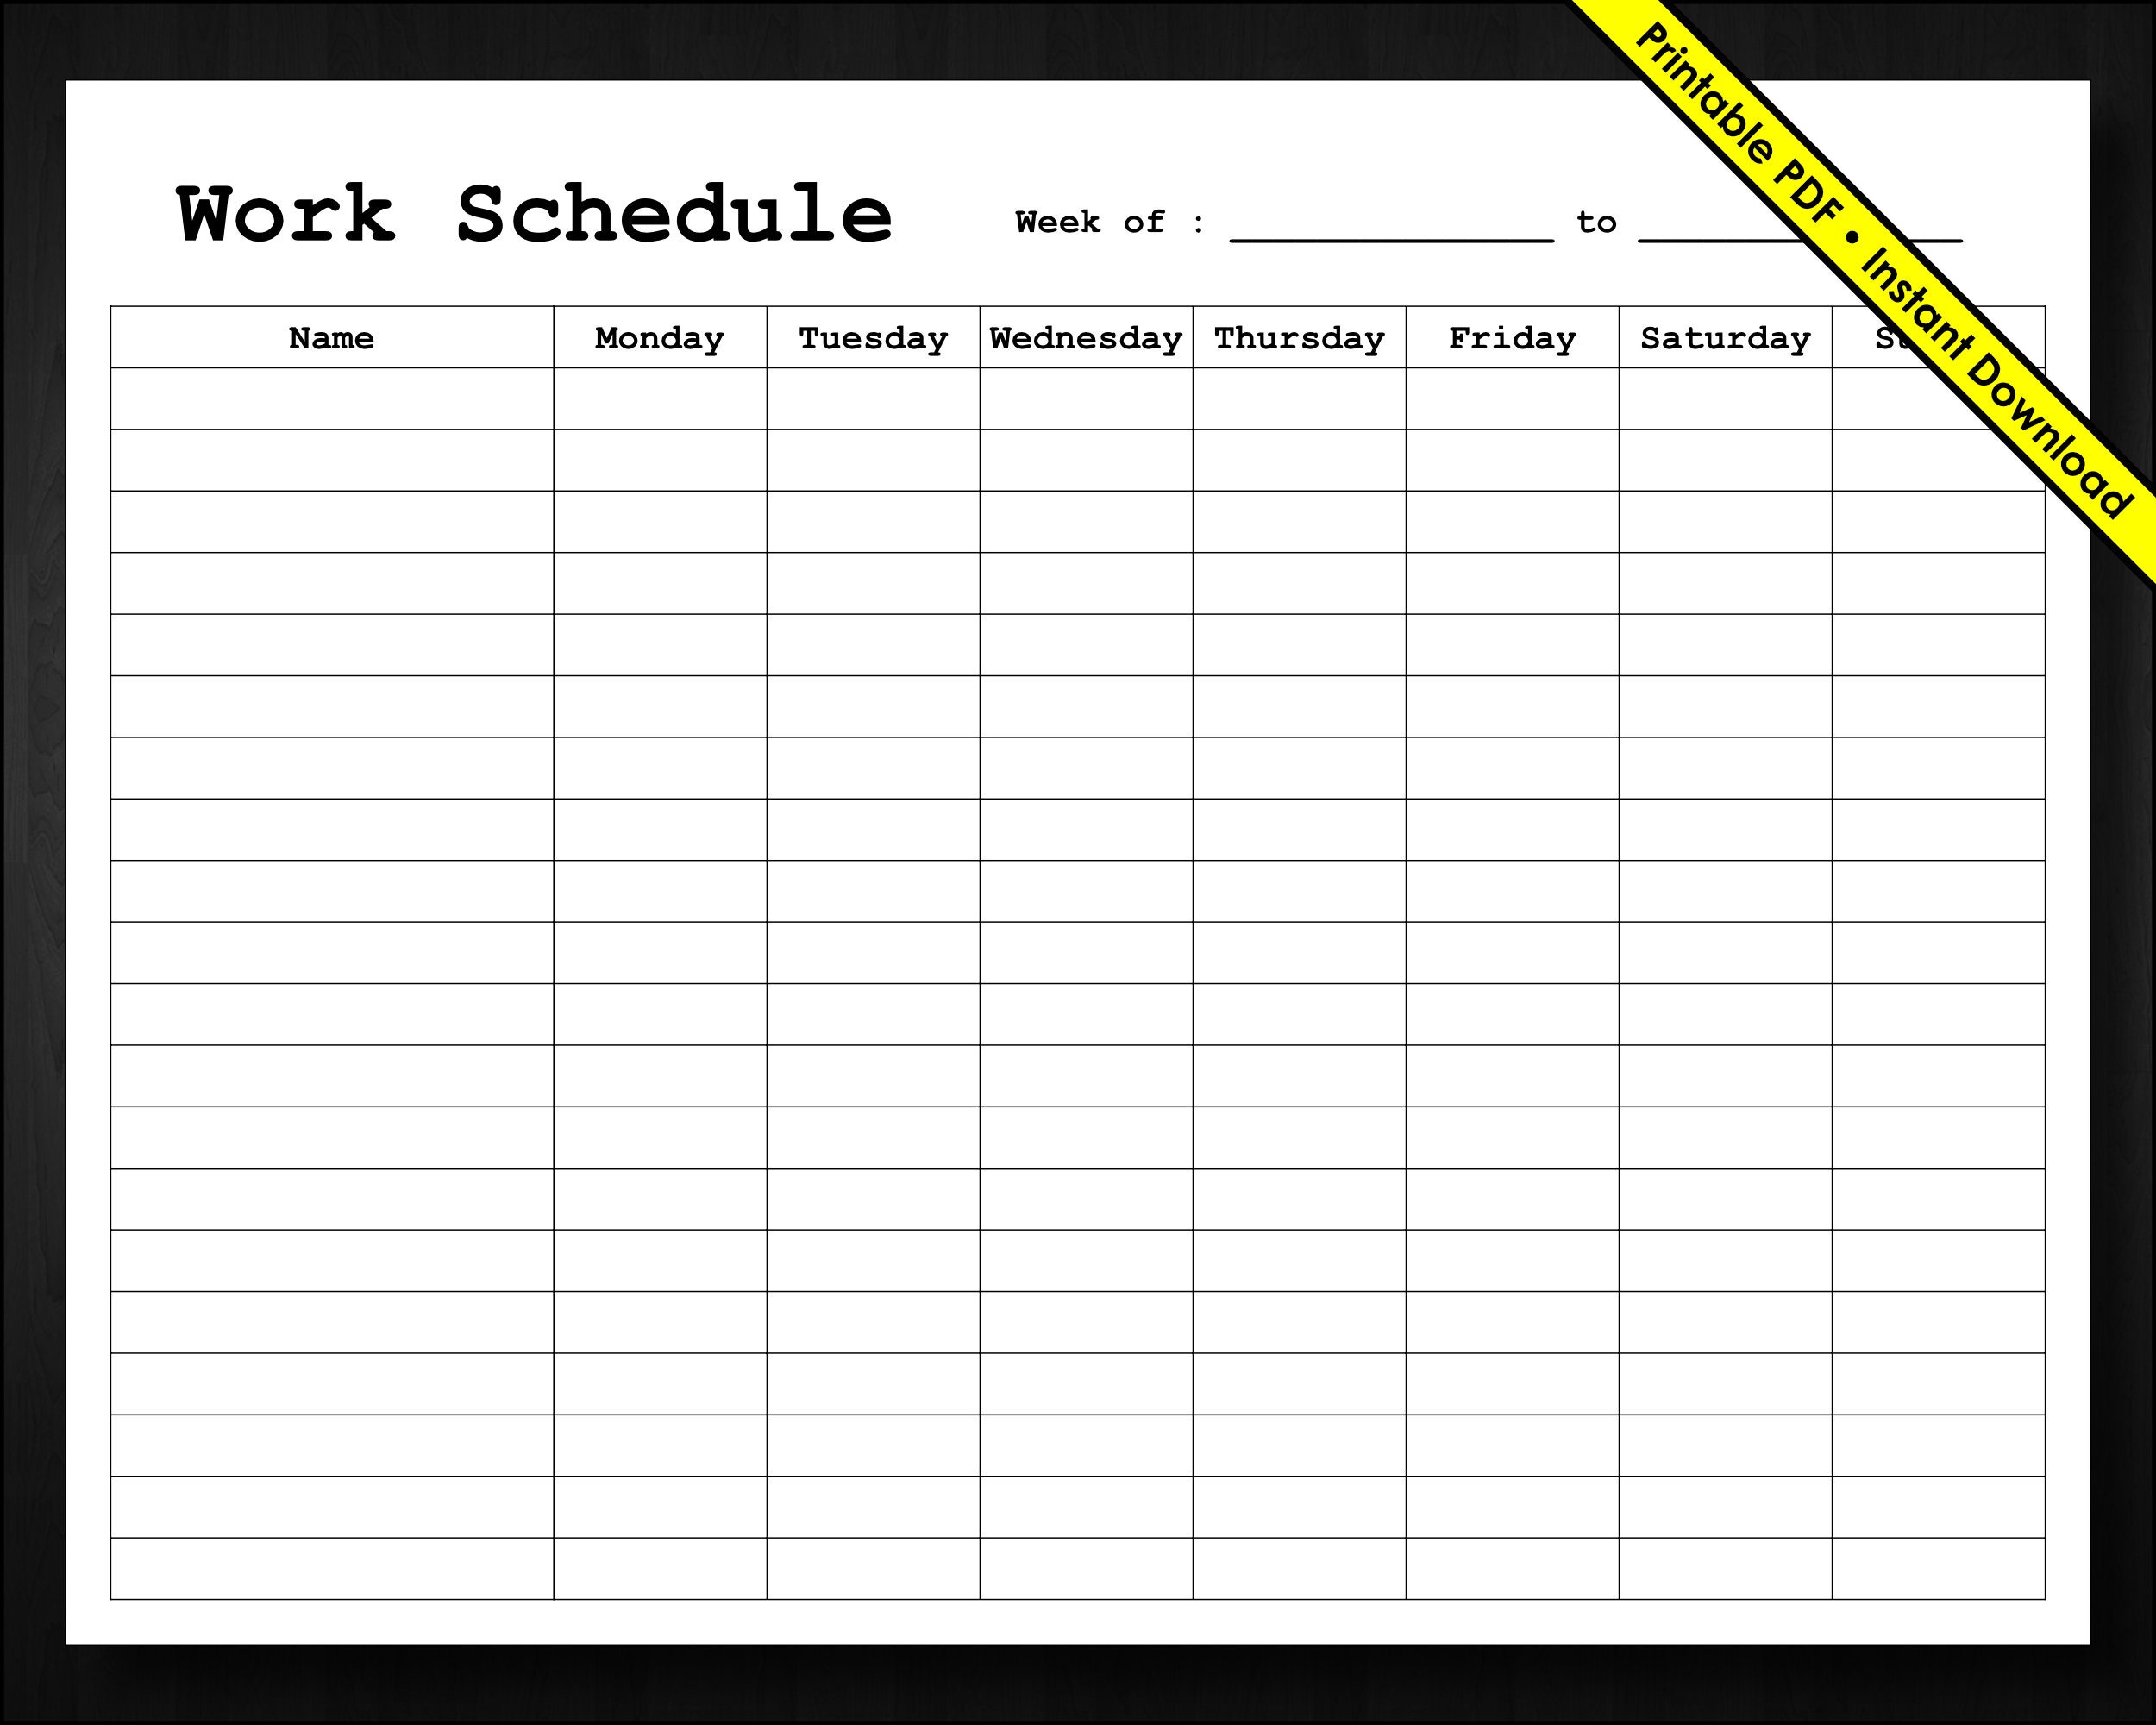 Basic Employee Weekly Work Schedule Weekly Staff Schedule Staff Shifts ...